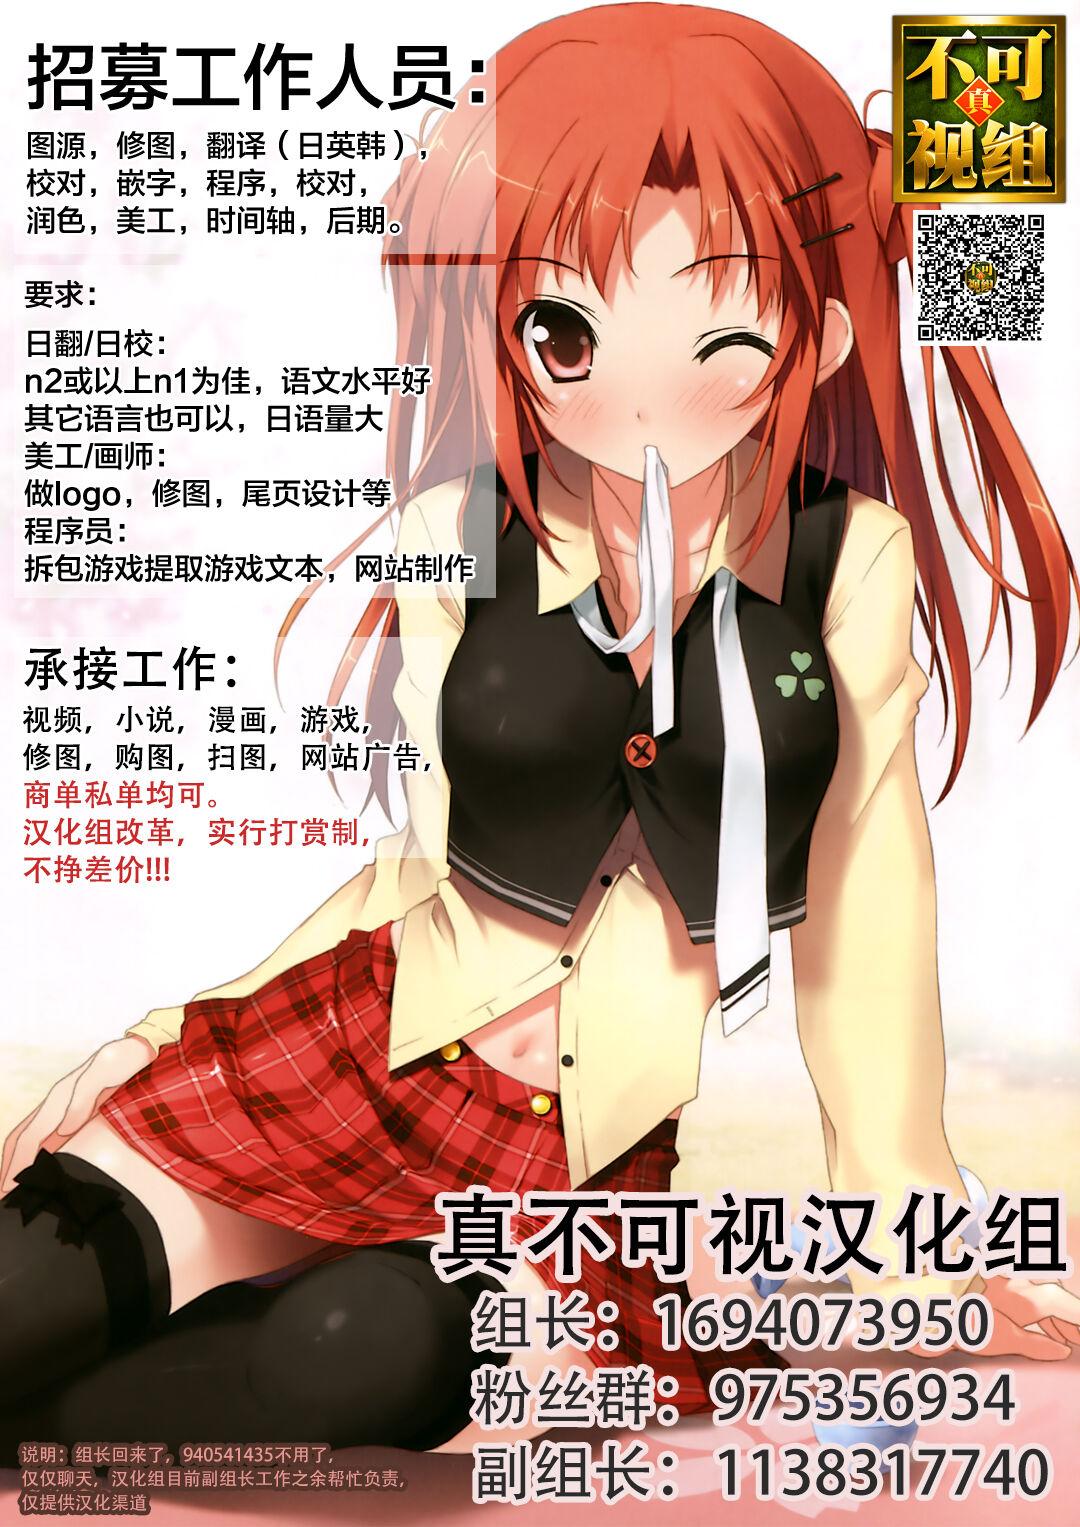 Homura & Hikari Sennou NTR Manga 14P 14